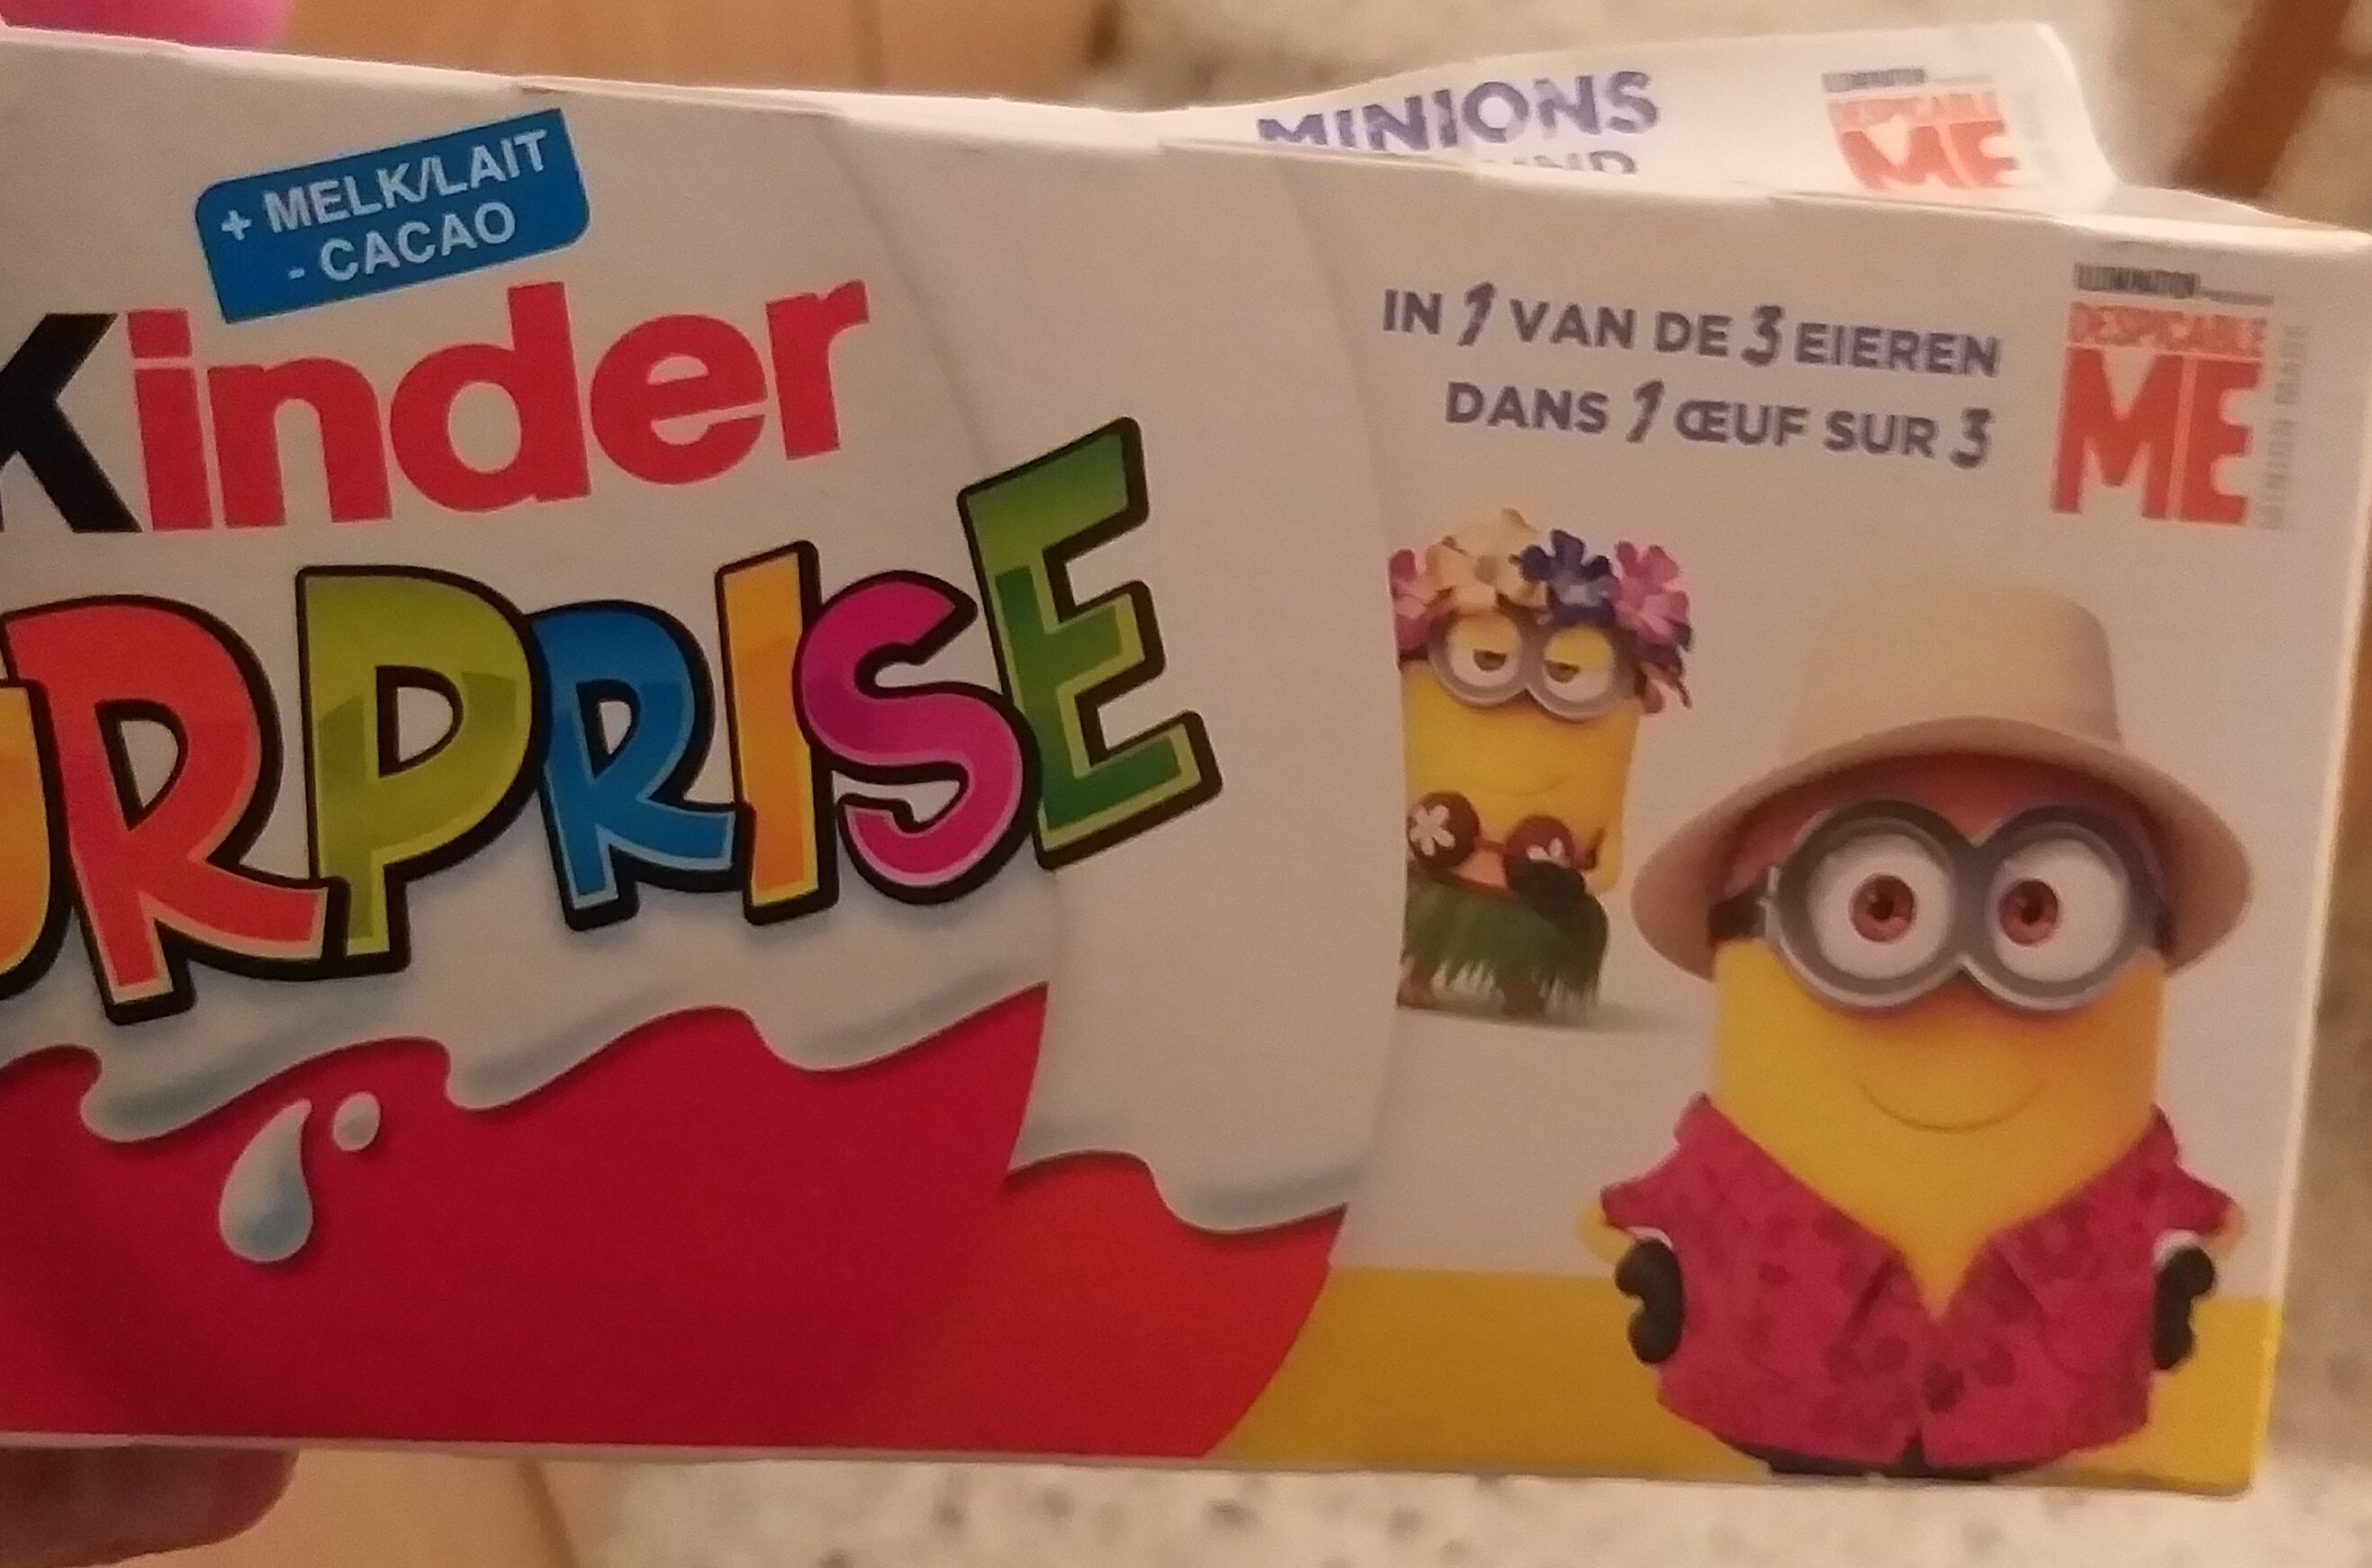 Kinder Surprise 3 pack - Produit